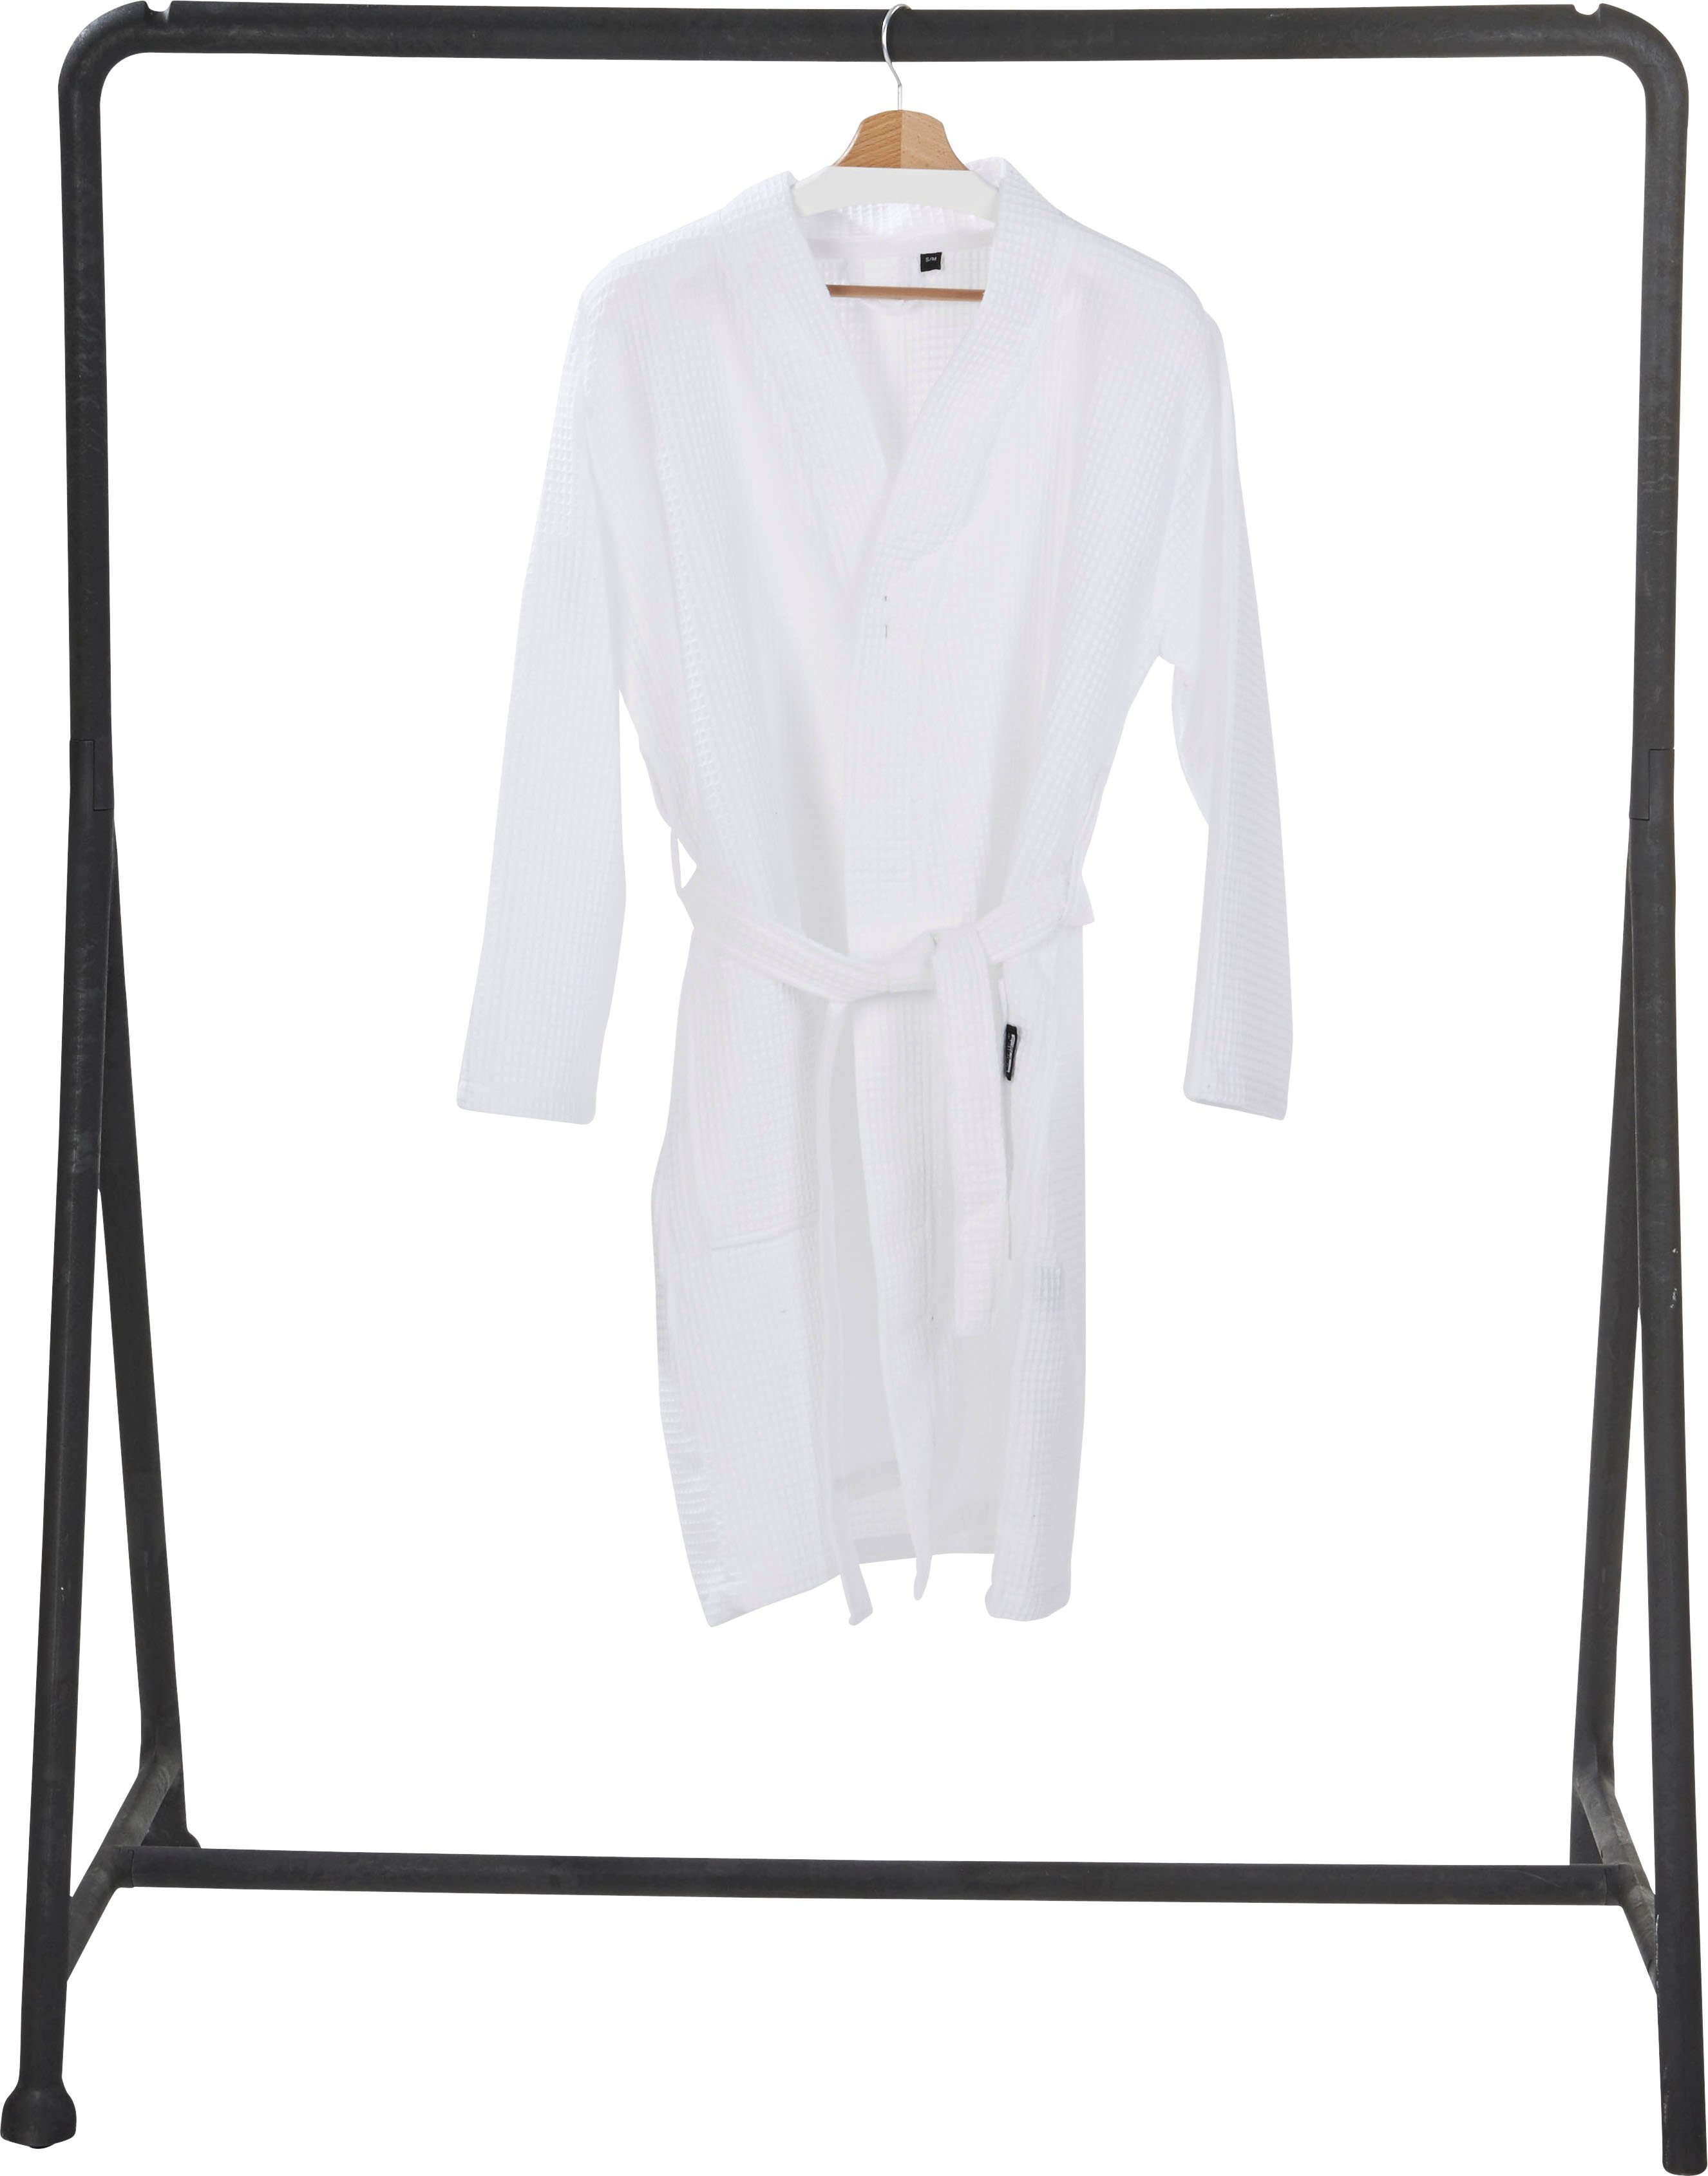 Taschen Piqué, mit weiß Schalkragen und done.® MySense, Waffelpiqué-Struktur, aufgesetzten Damenbademantel Kurzform,